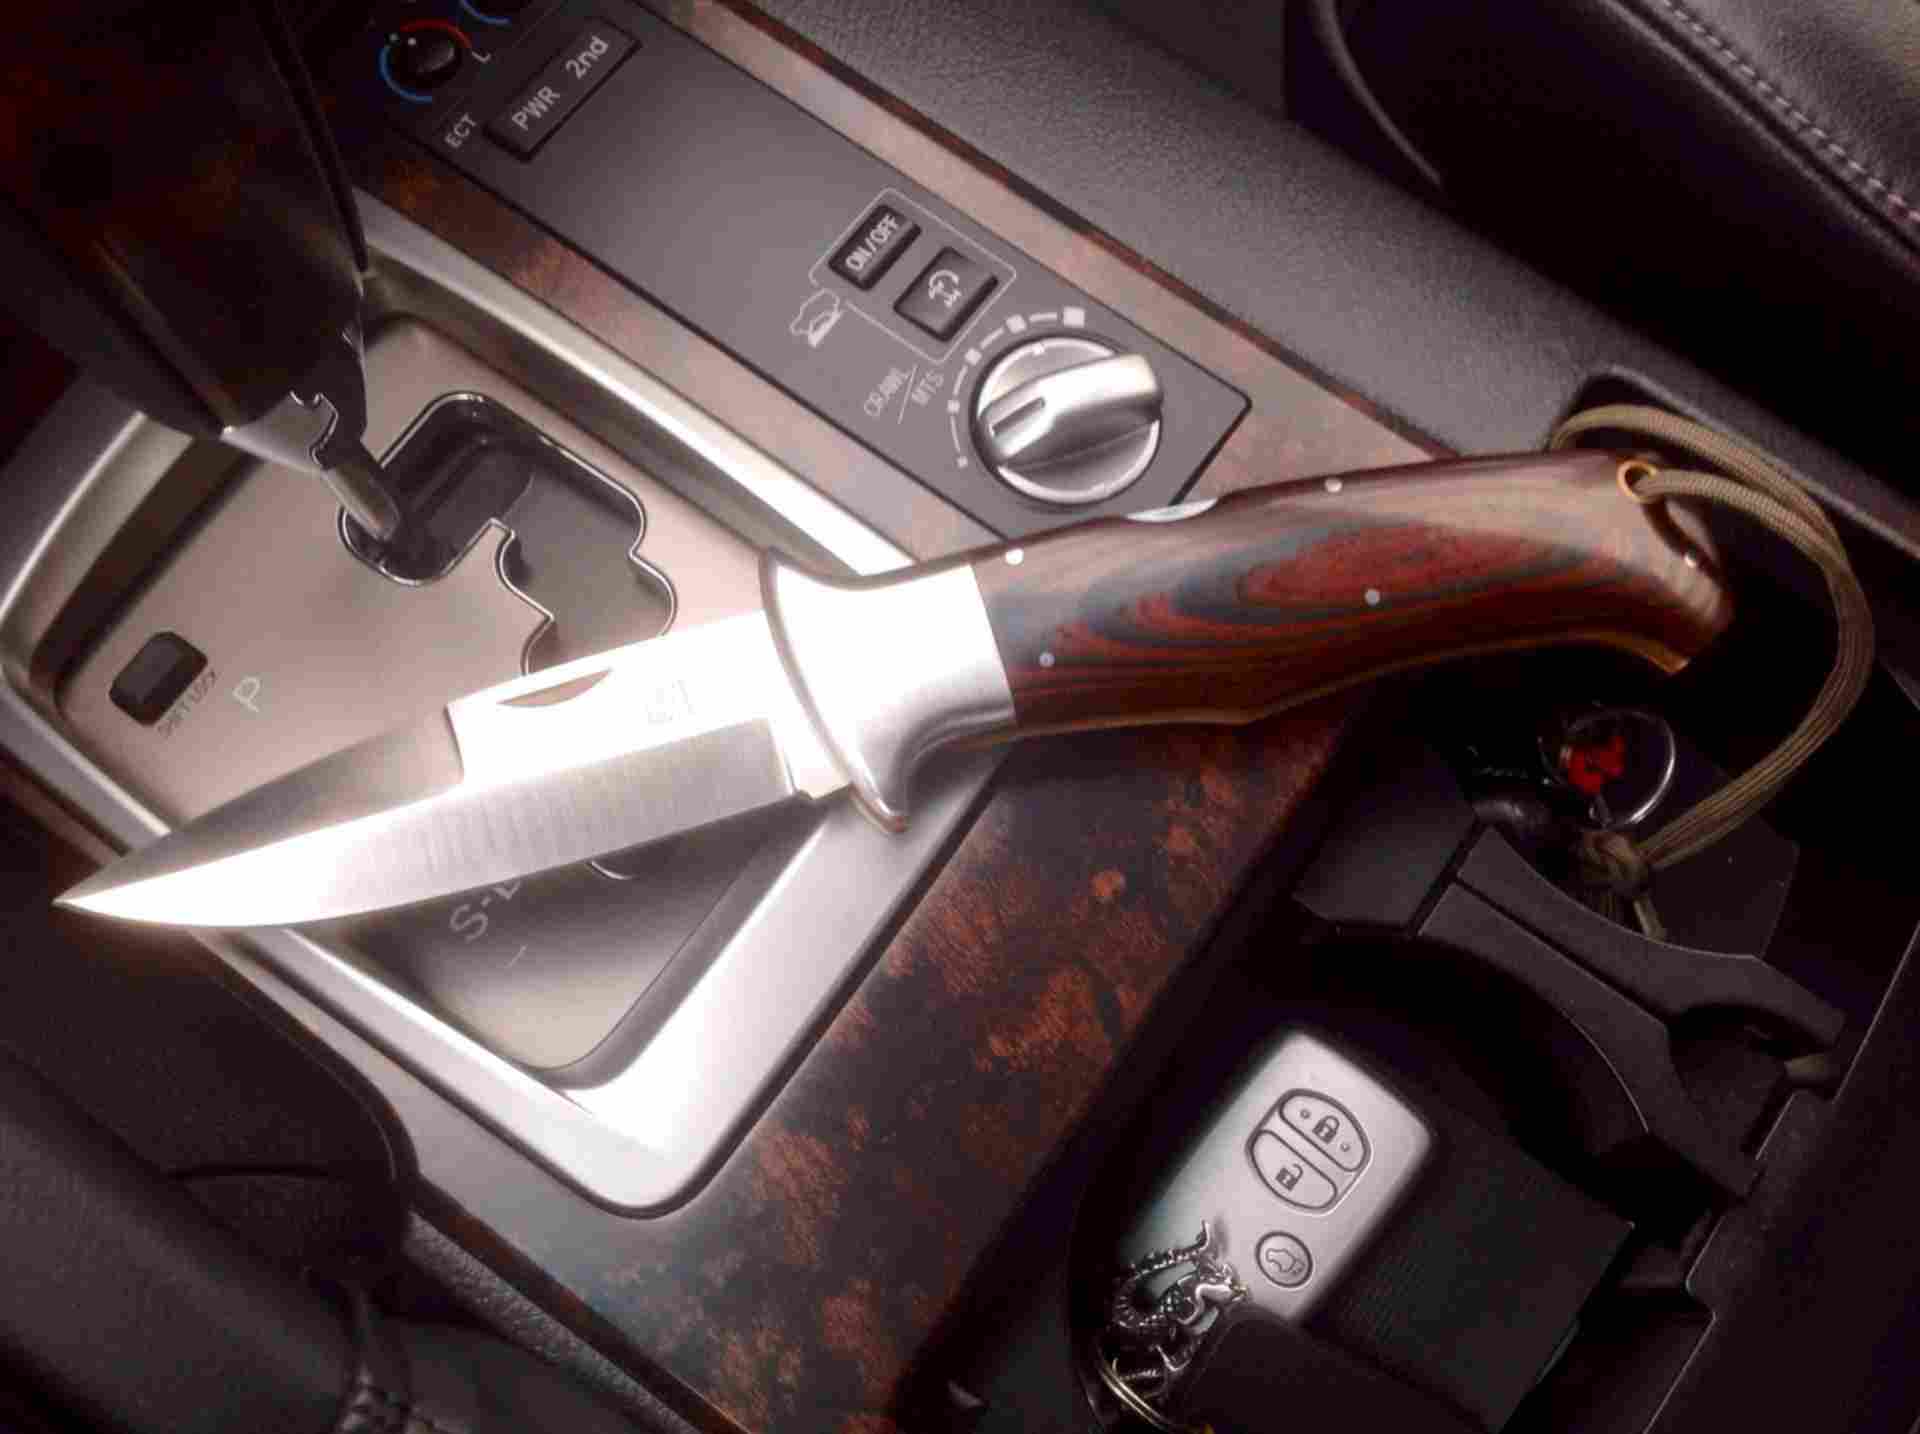 Ножевая машина. Нож в машину. Авто ножик. Разрешённые ножи в автомобиле. Небольшой нож в машину.